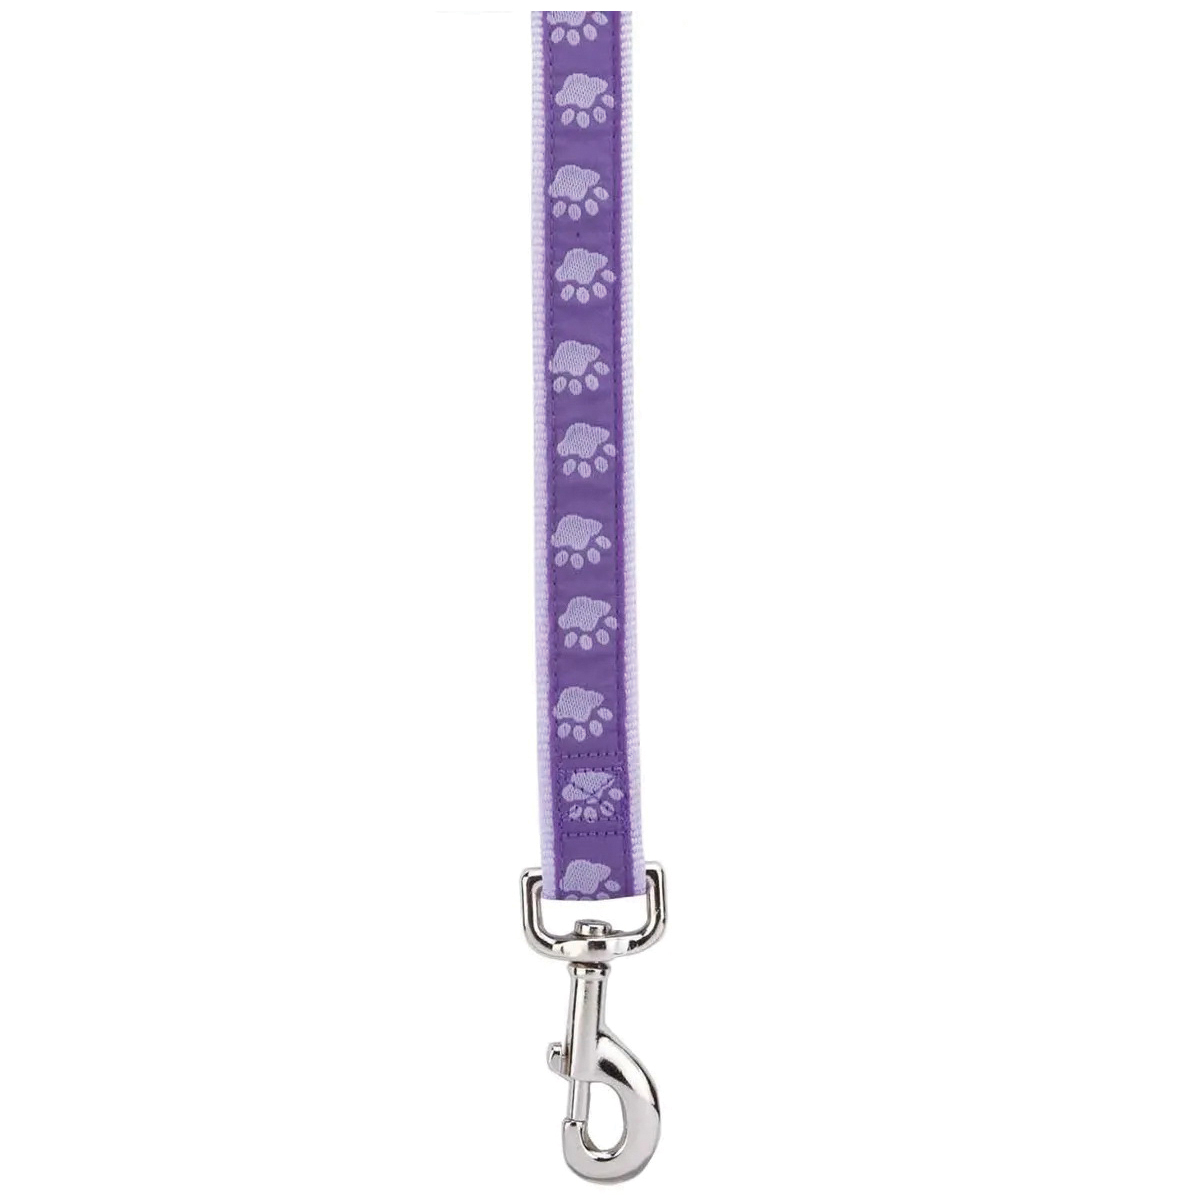 ZA8861 44 79 Two-Tone Pawprint Dog Lead, 4 ft L, 5/8 in W, Nylon Line, Purple